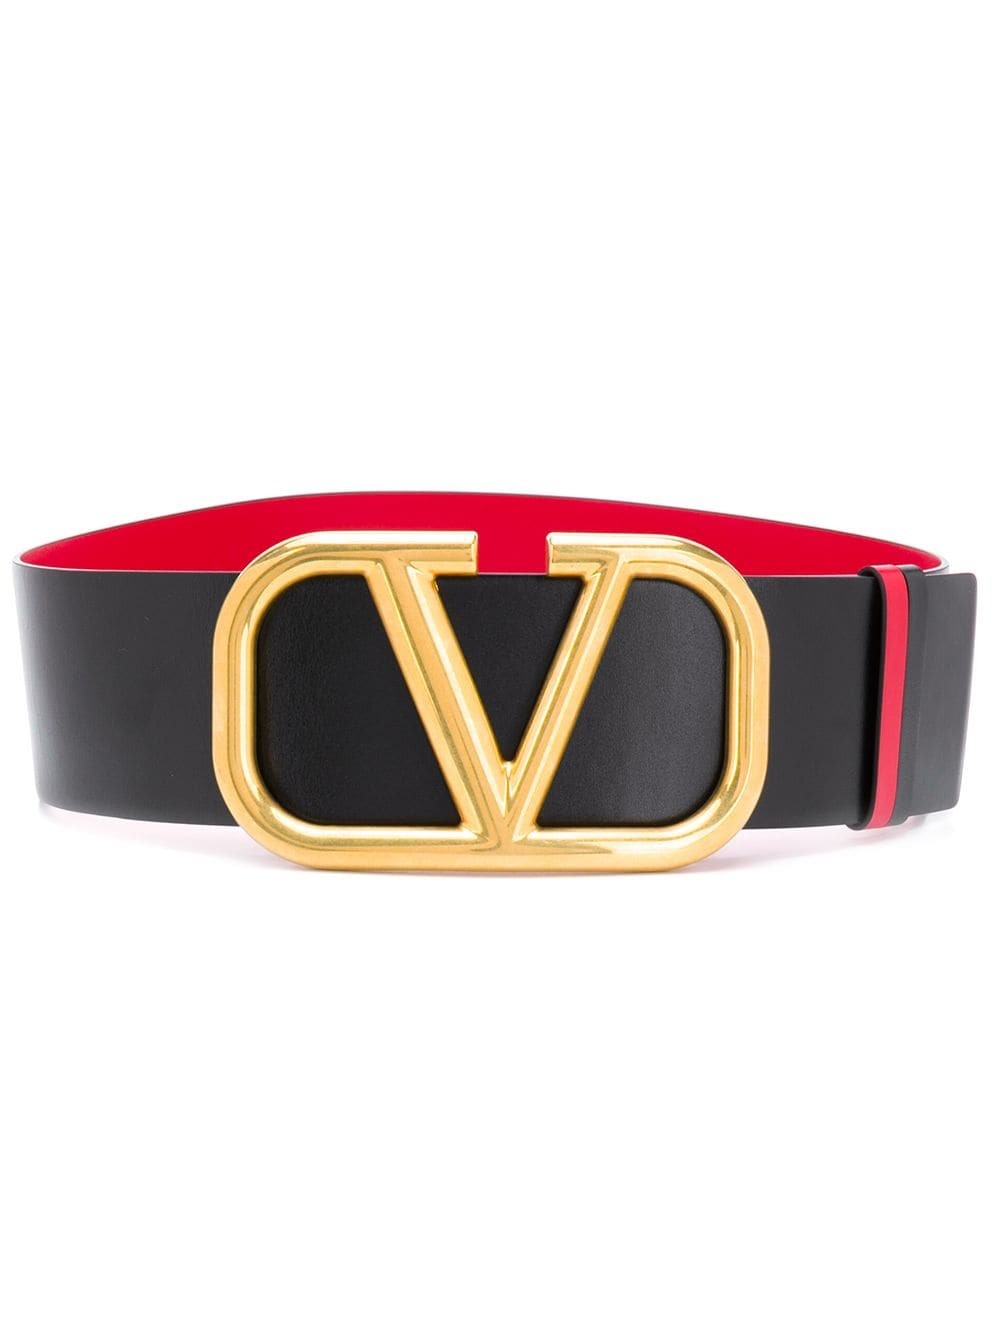 فالنتينو - حزام  بوجهين وشعار حرف V - أسود/أحمر